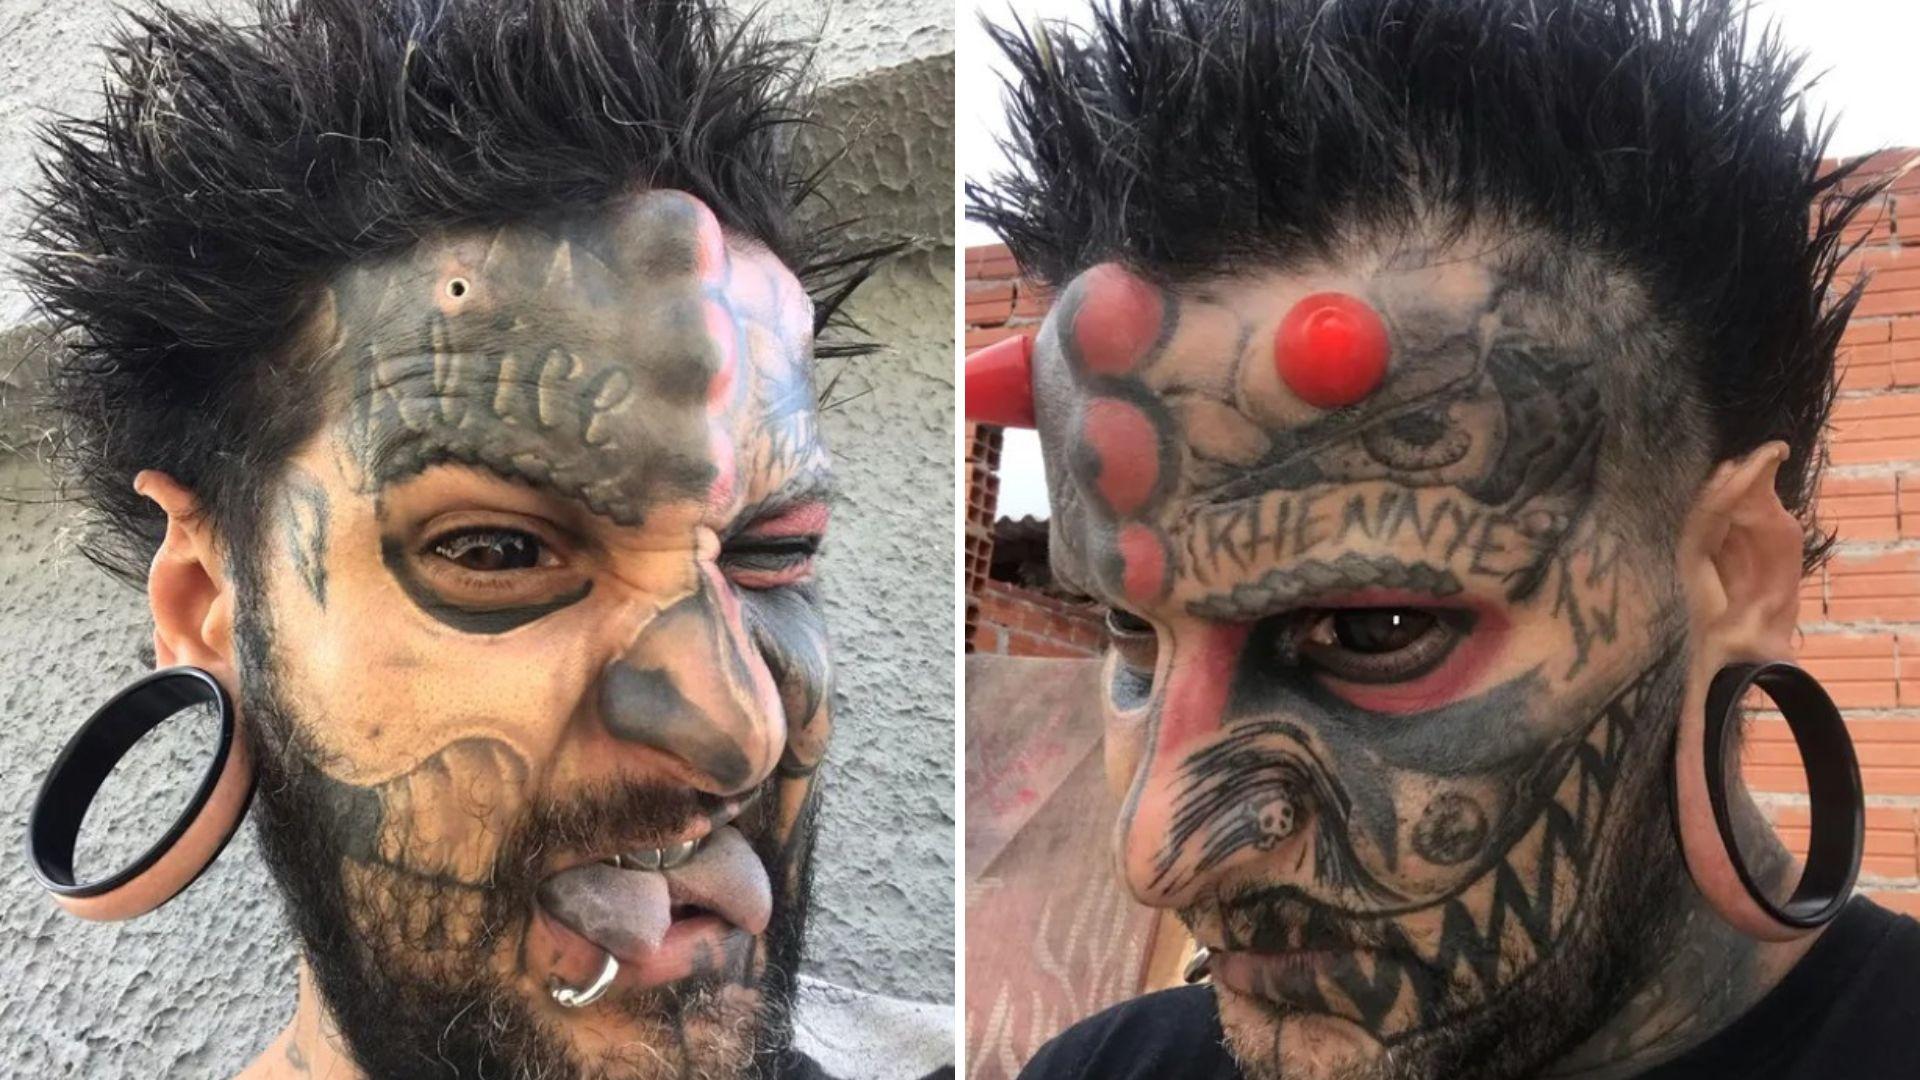 bărbat care a vrut să semene cu diavolul, cu coarne roșii și lentile de contact, fața plină de tatuaje